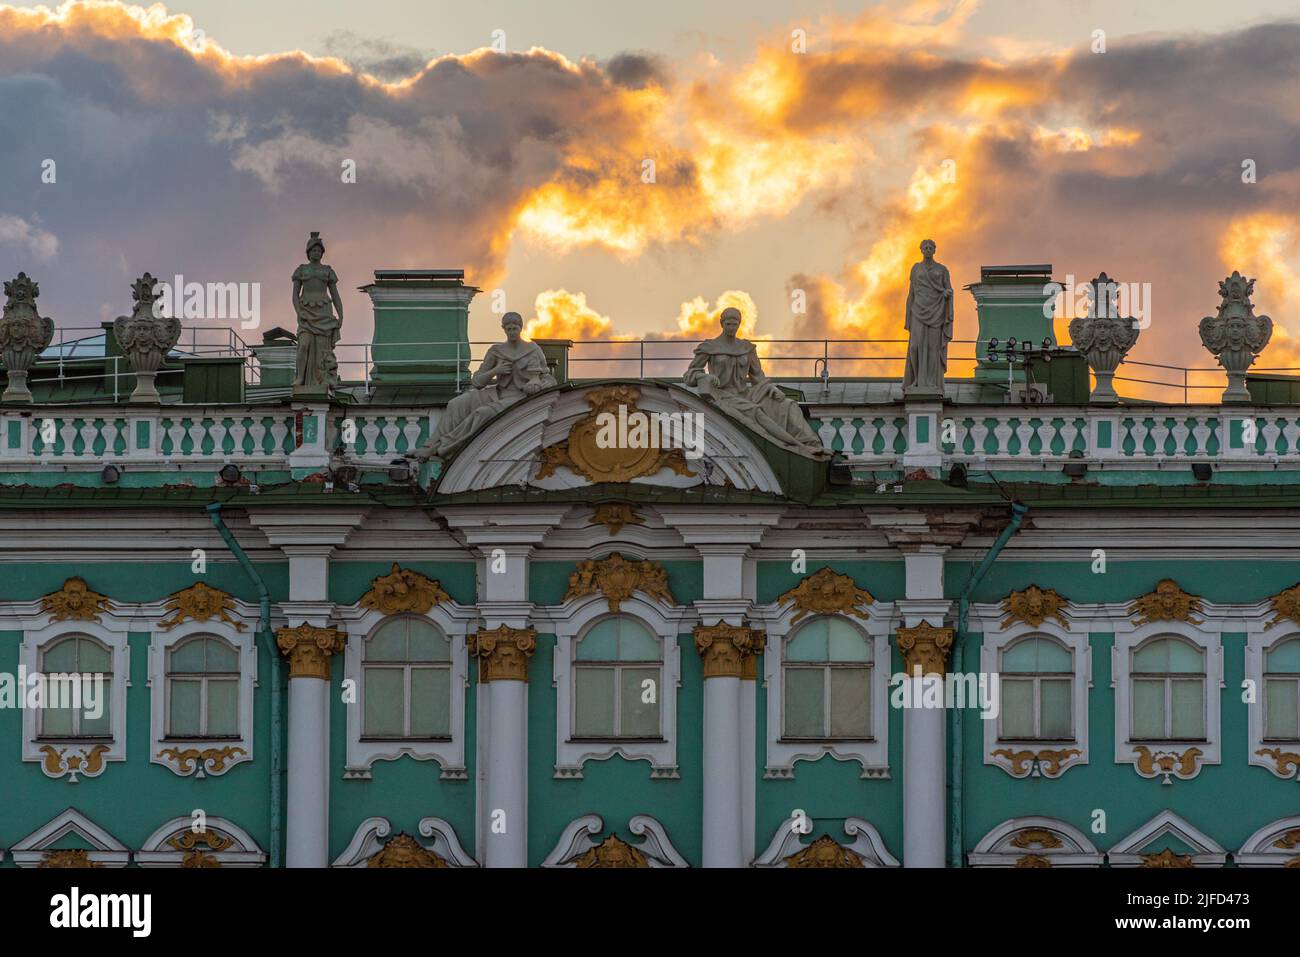 L'Hermitage (Palais d'hiver) pendant les nuits blanches. Un musée et une attraction touristique à Saint-Pétersbourg, Russie Banque D'Images